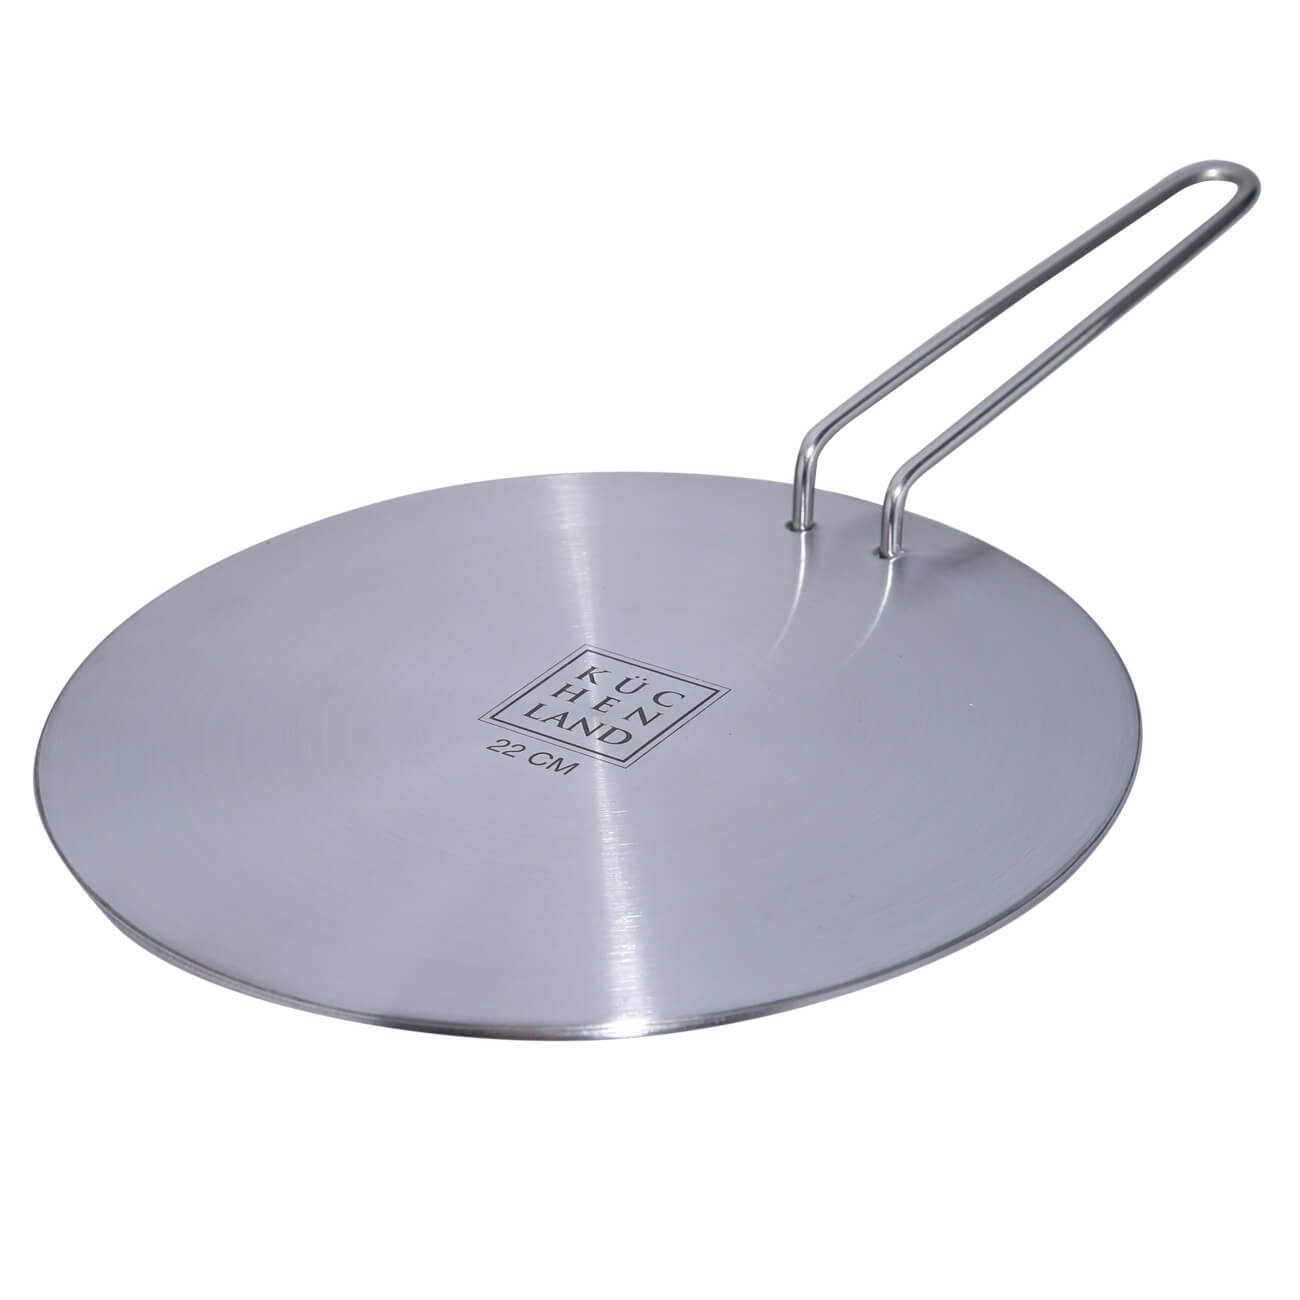 Диск-переходник для индукционной плиты, 22 см, со съемной ручкой, сталь/алюминий, Induction диск sturm bt8952d 999